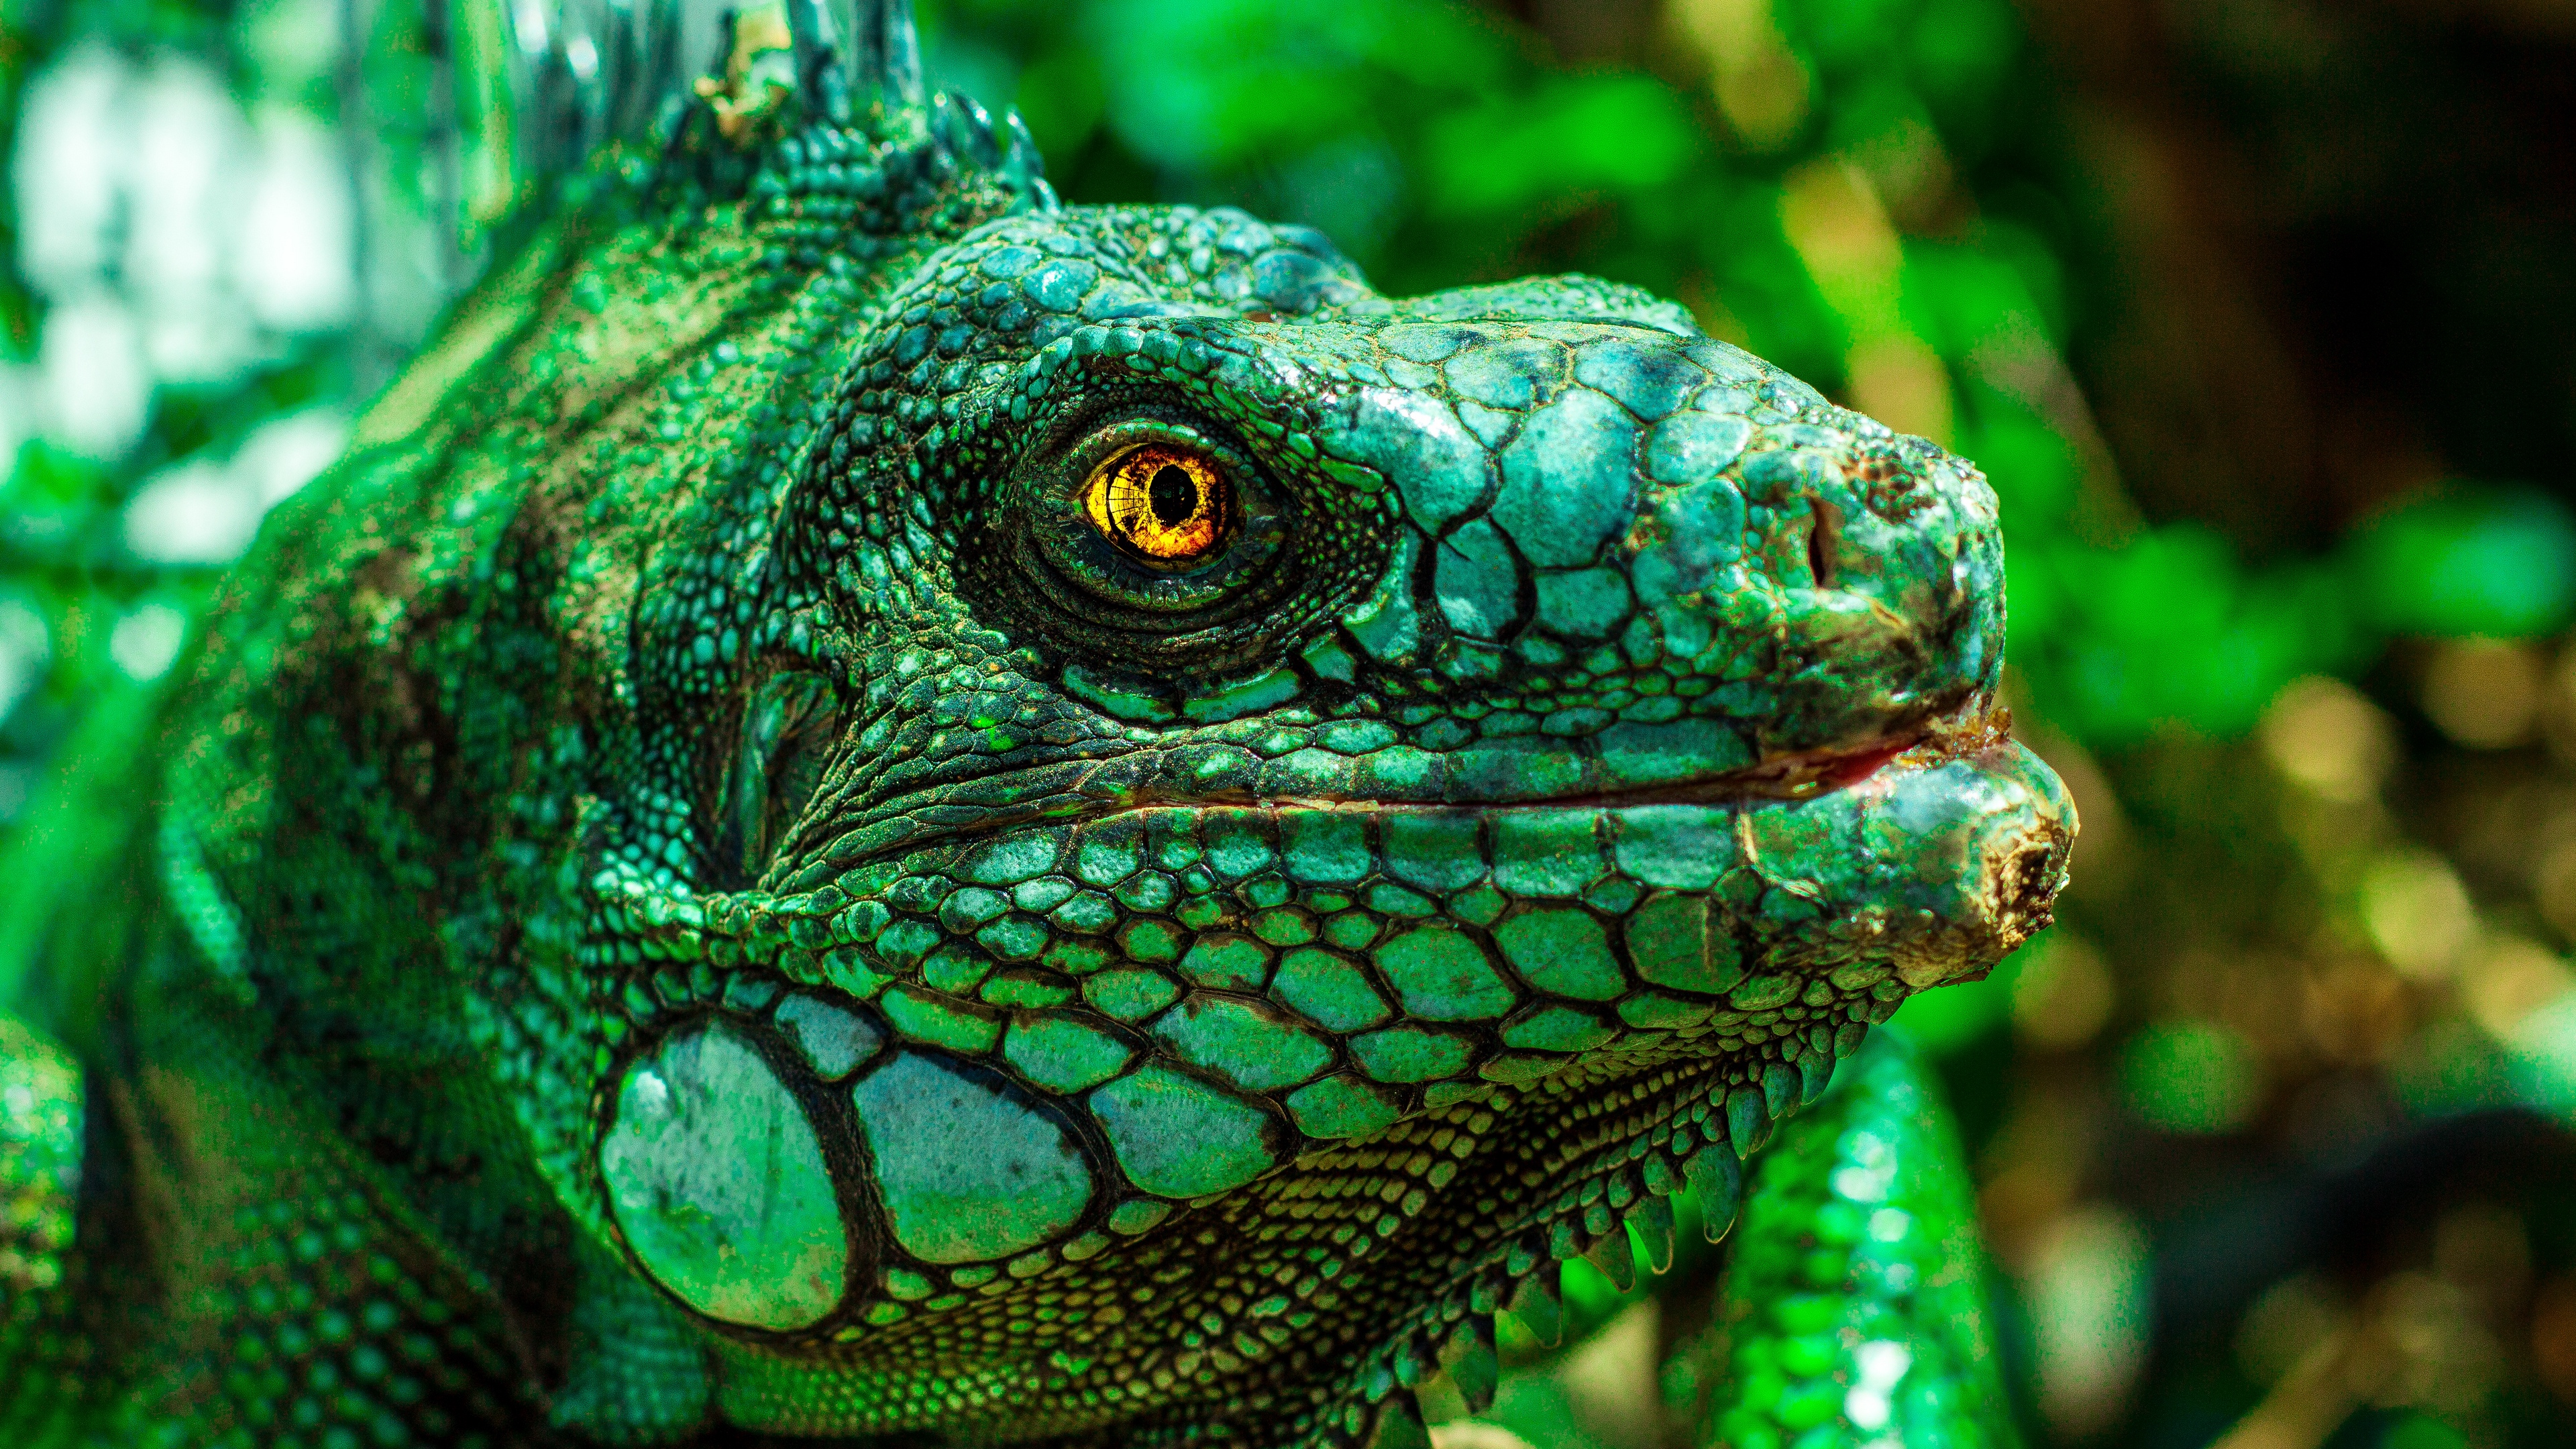 iguana eyes reptile 4k 1542241922 - iguana, eyes, reptile 4k - reptile, iguana, Eyes